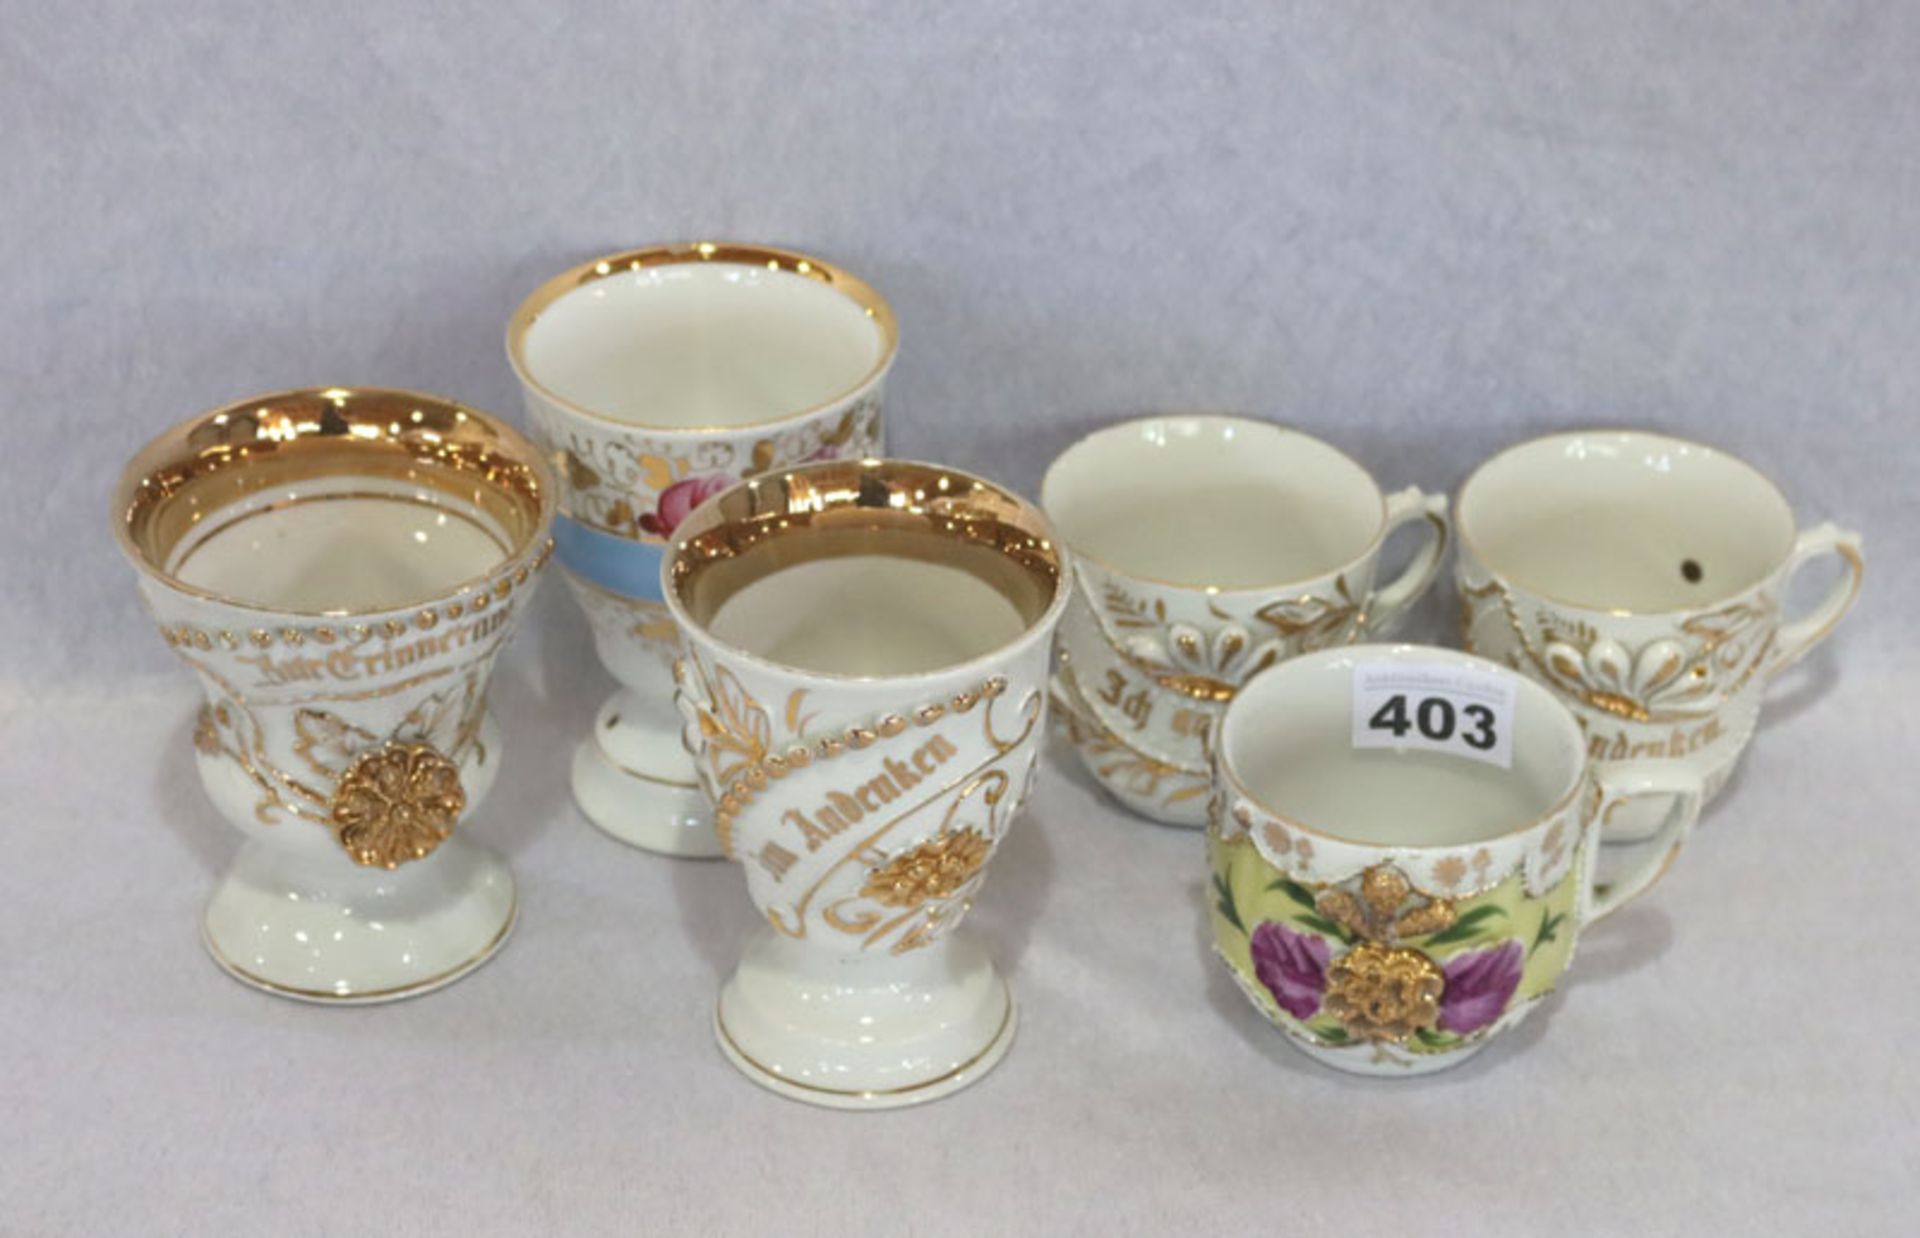 Porzellan-Konvolut: 3 Andenkentassen und 3 Andenken Becher, mit Blumen und Golddekor, teils berieben